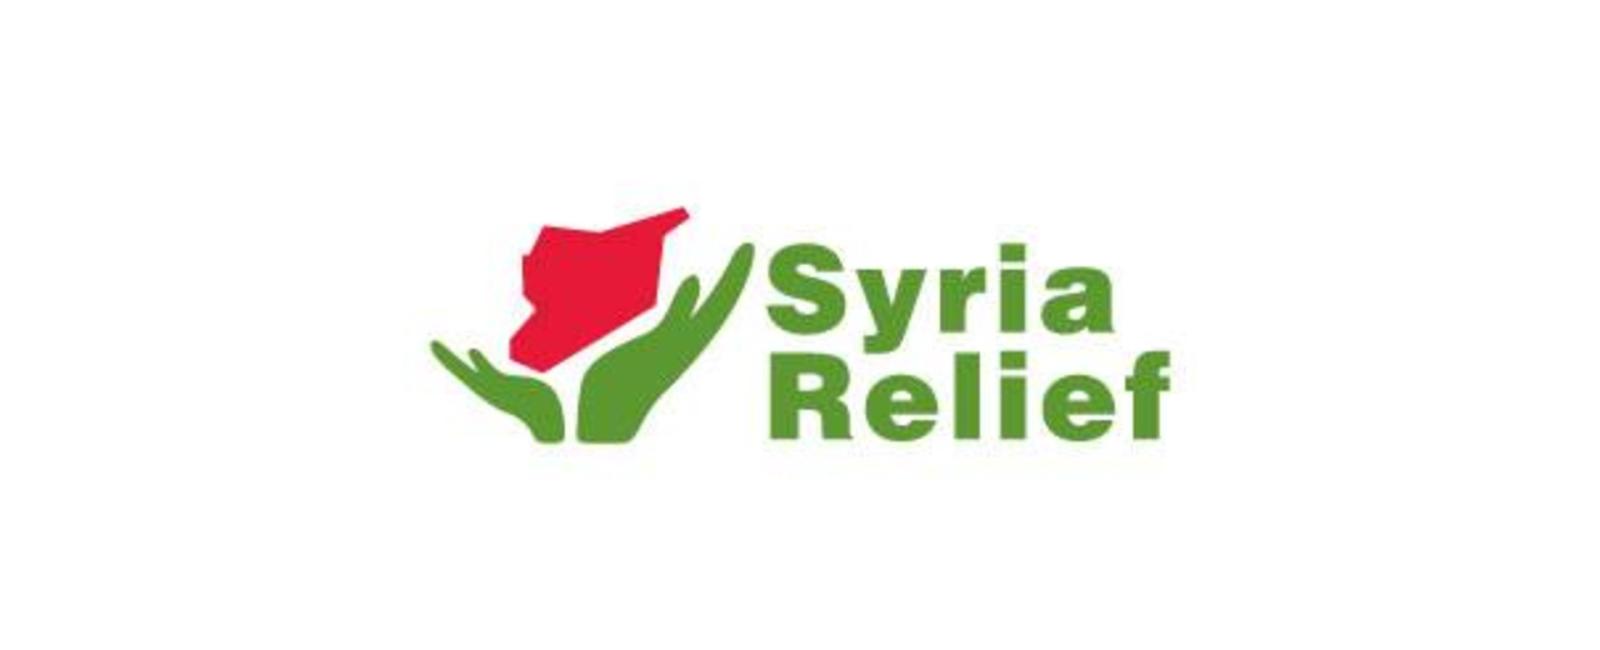 هيئة إغاثة سوريا - الريحانية